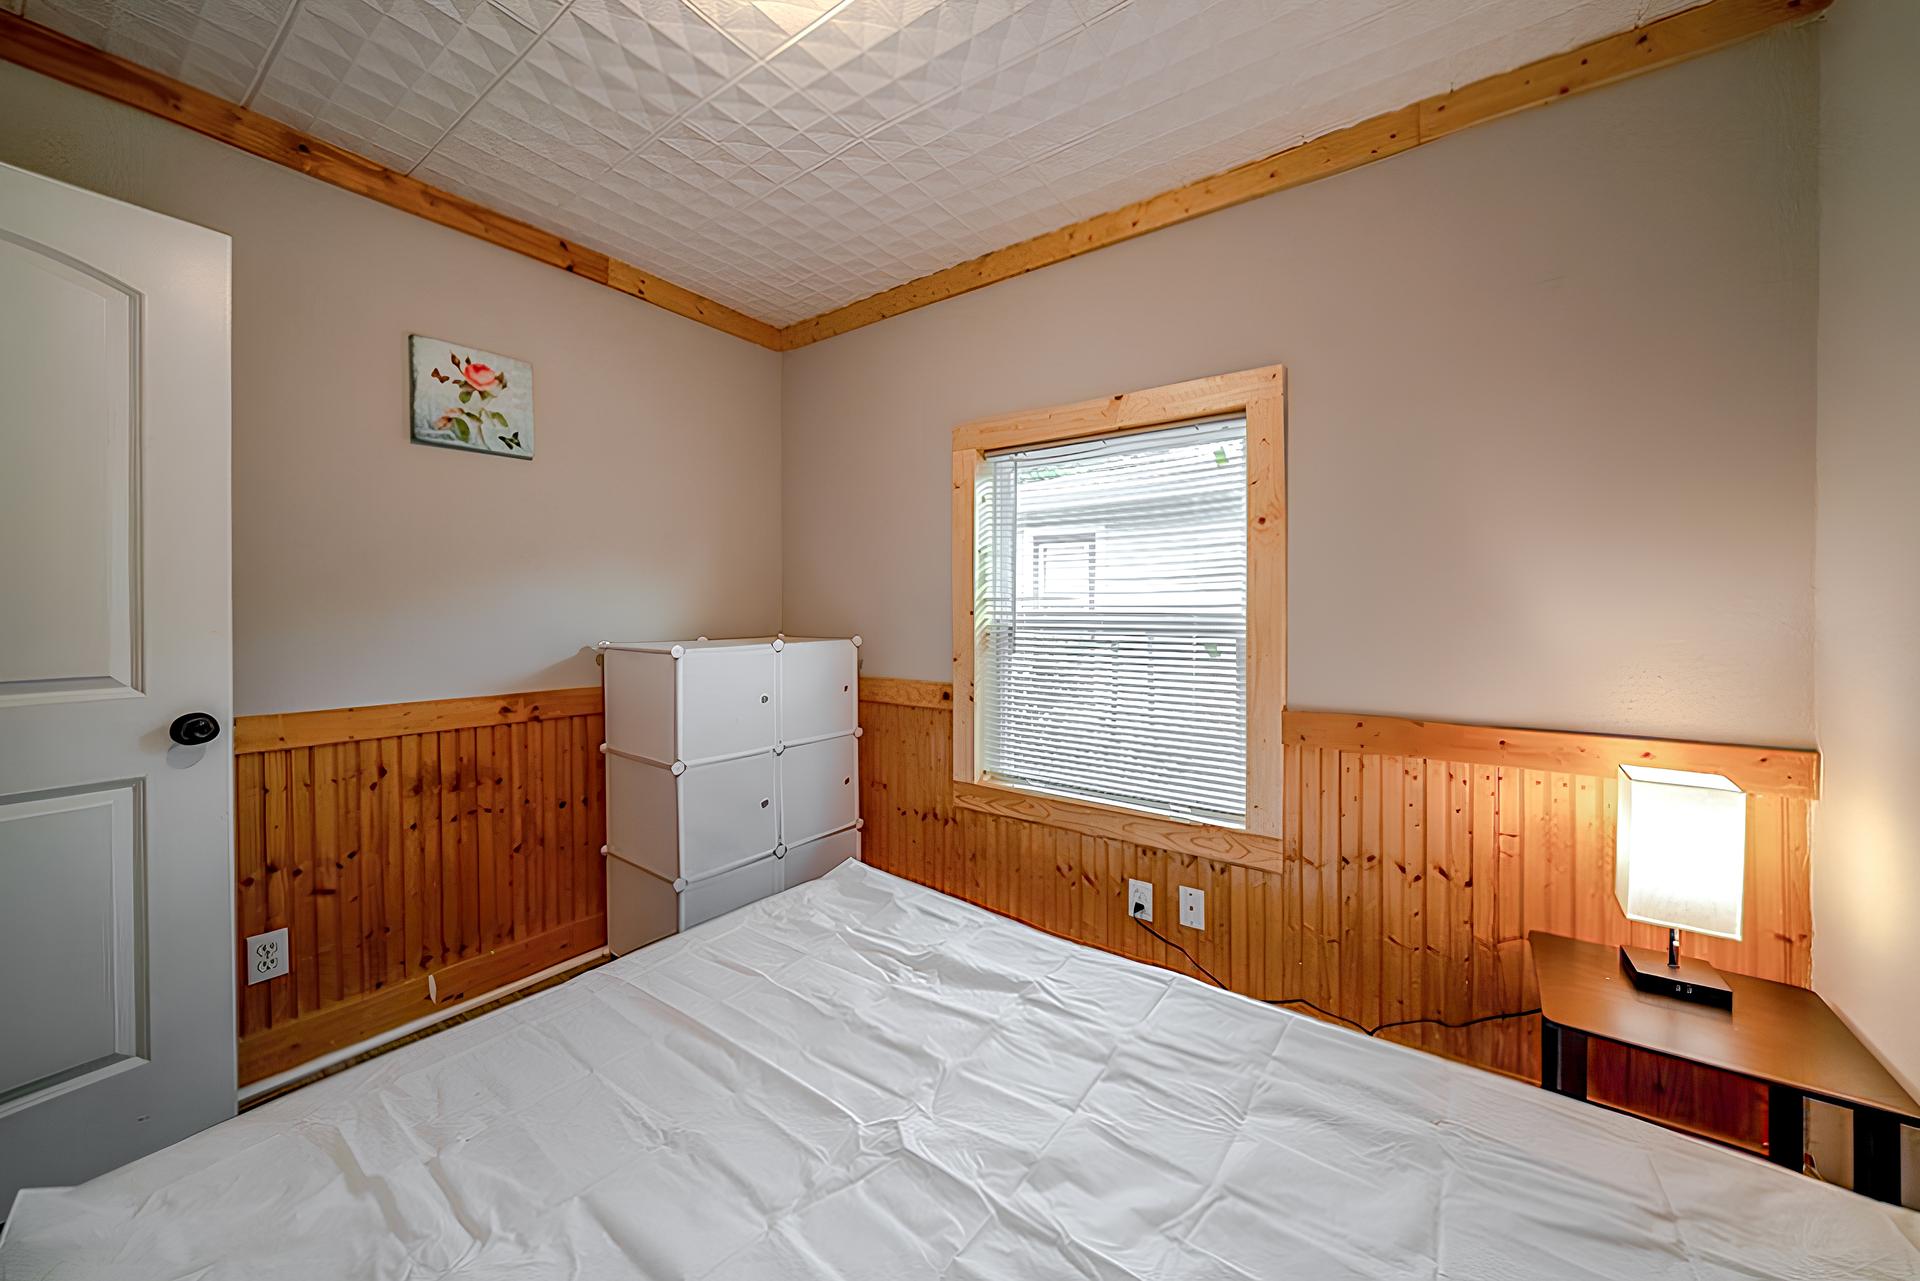 bedroom, detected: hardwood, window blind, bed